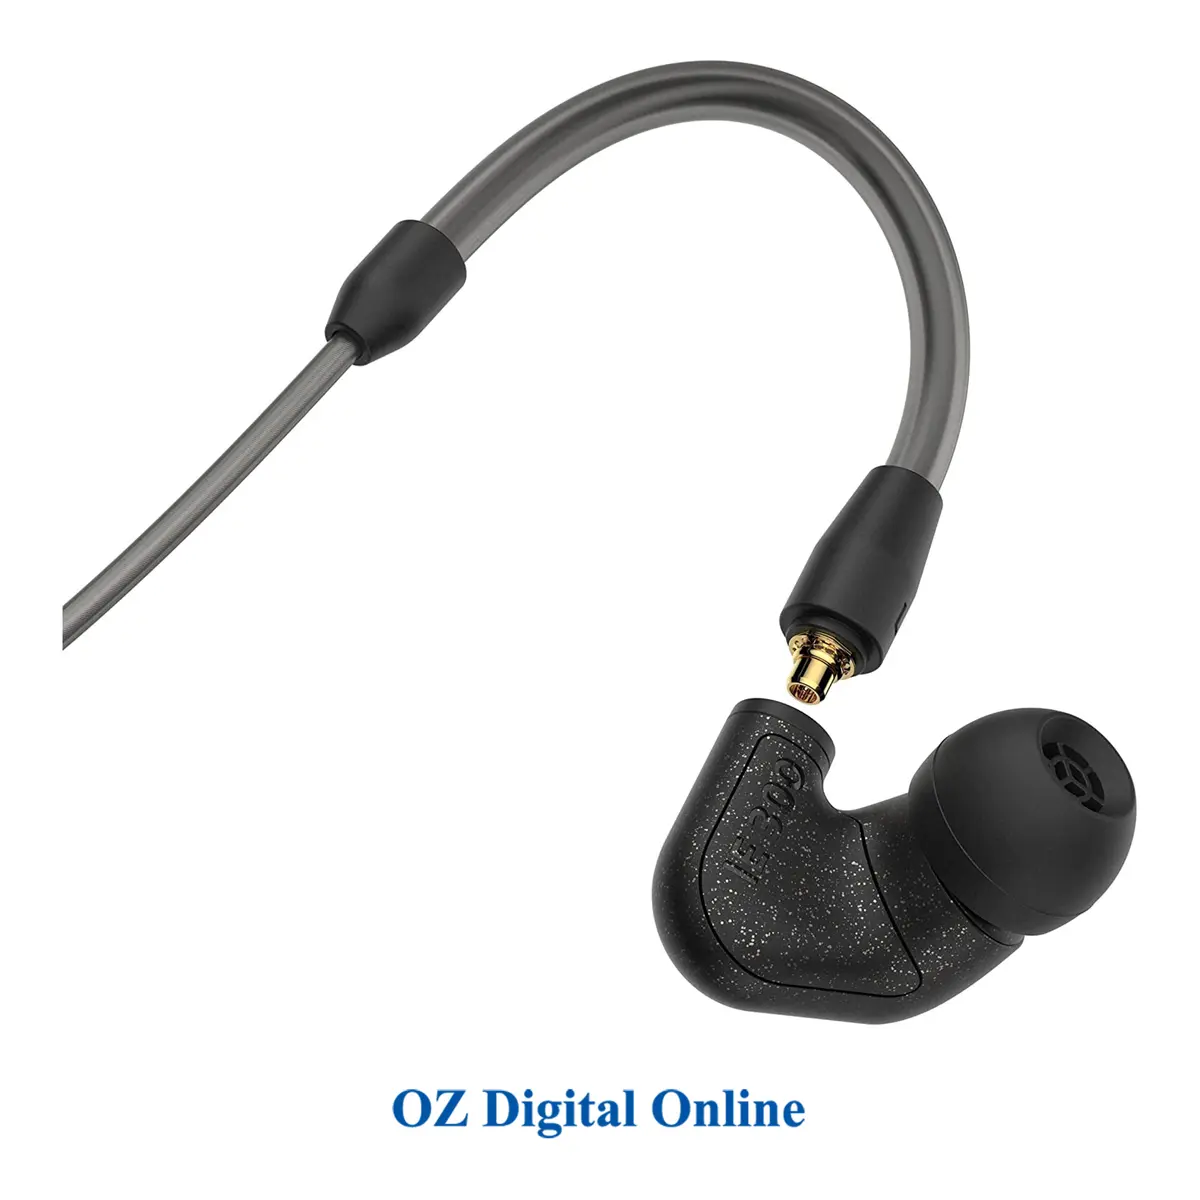 Main Image Sennheiser IE 300 In-Ear Headphones